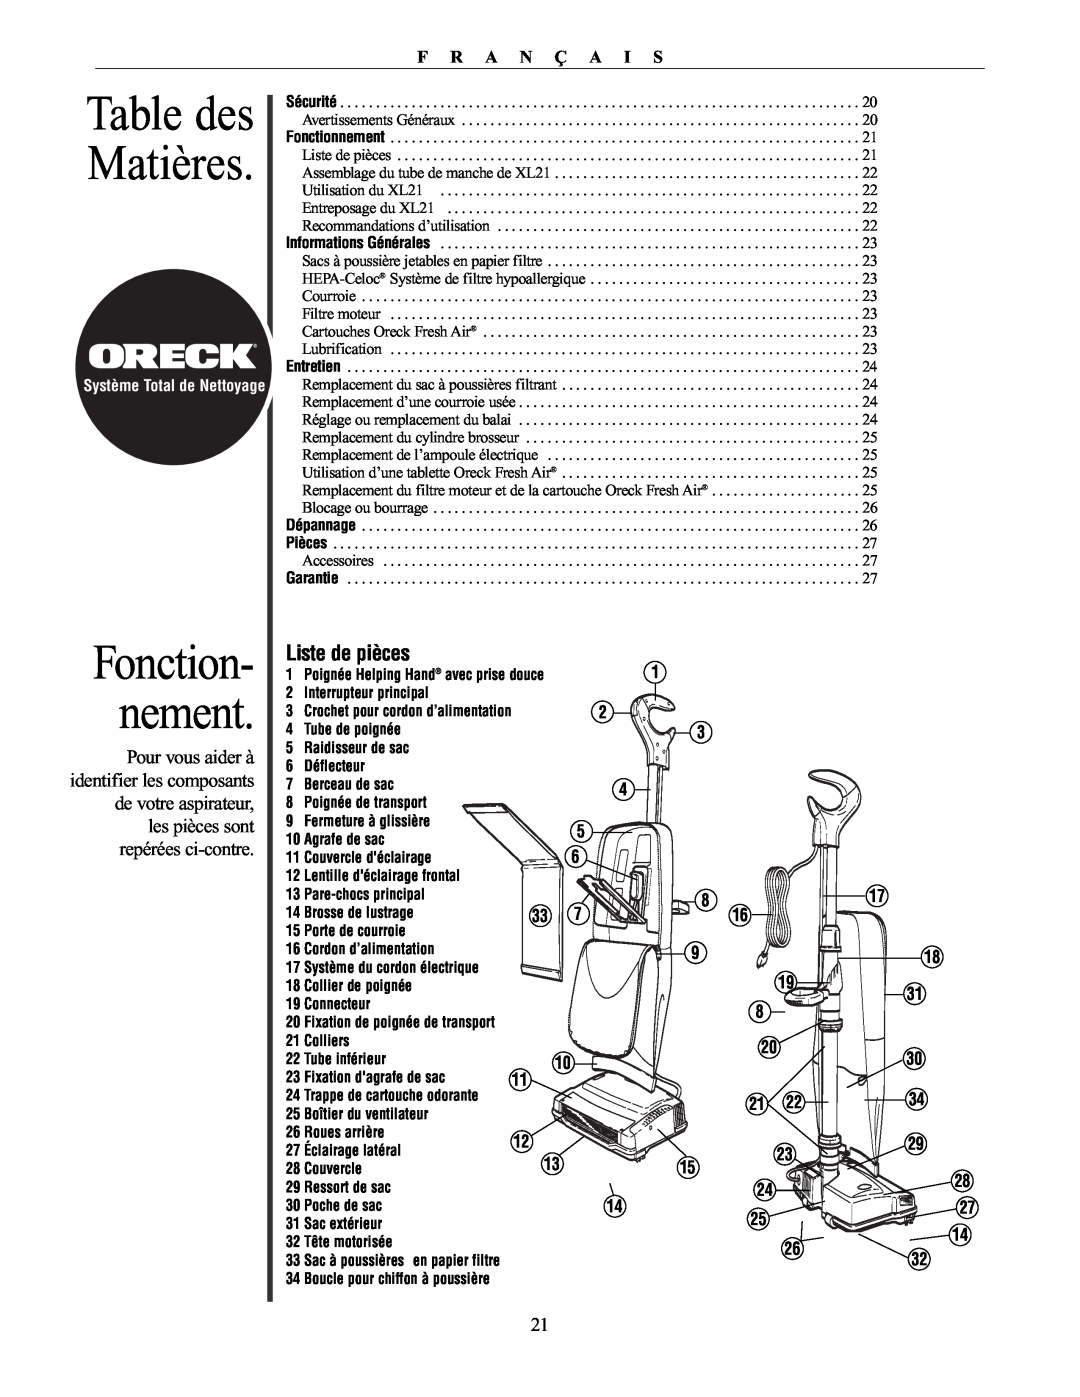 Oreck XL21 manual Table des Matières, Fonction- nement, Liste de pièces, F R A N Ç A I S 